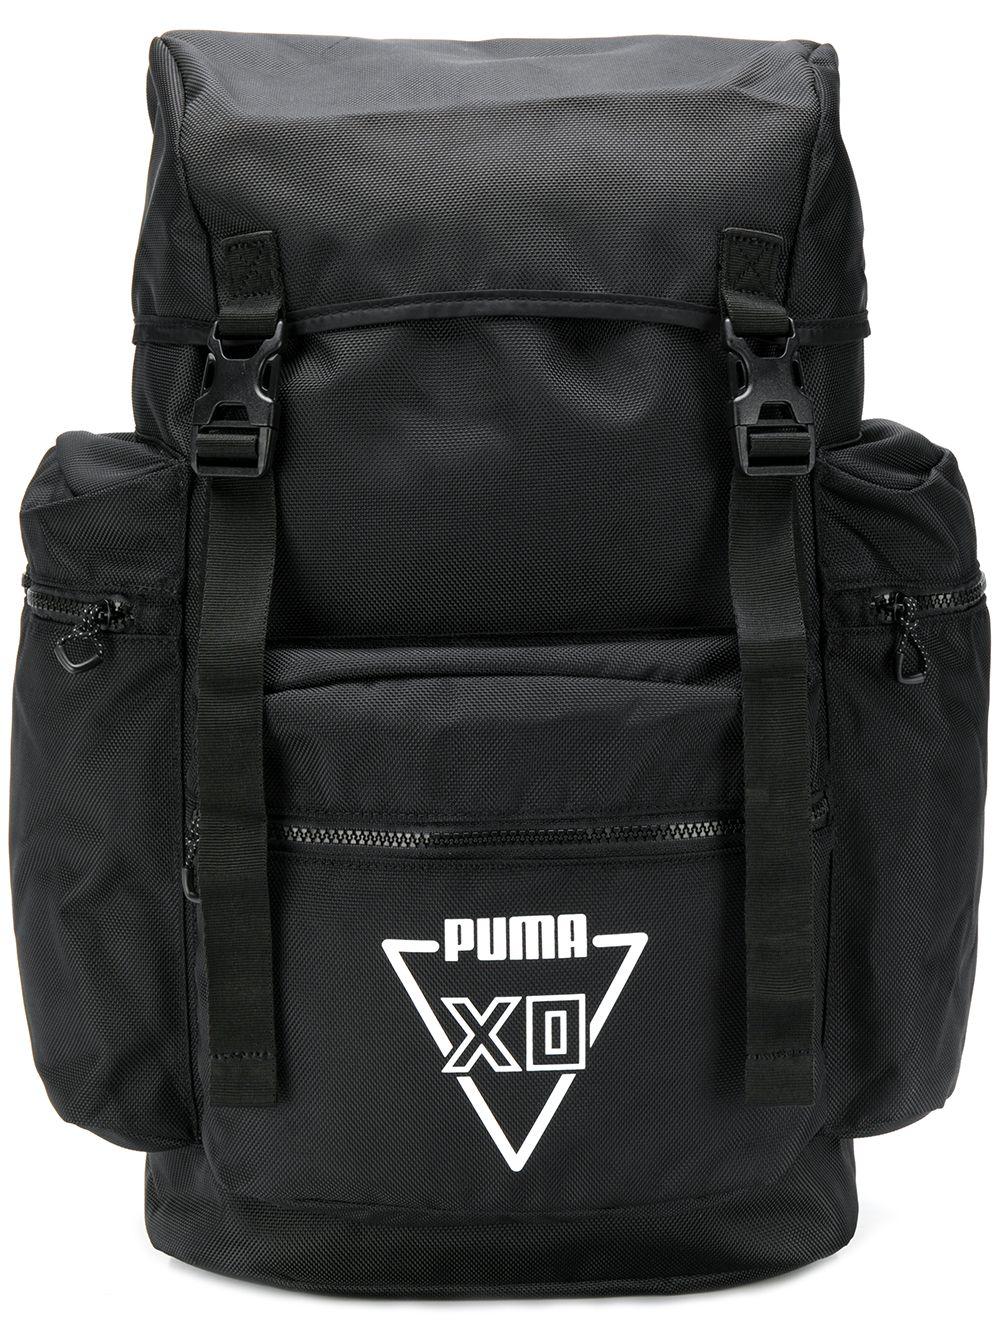 PUMA X Xo Backpack in Black - Lyst